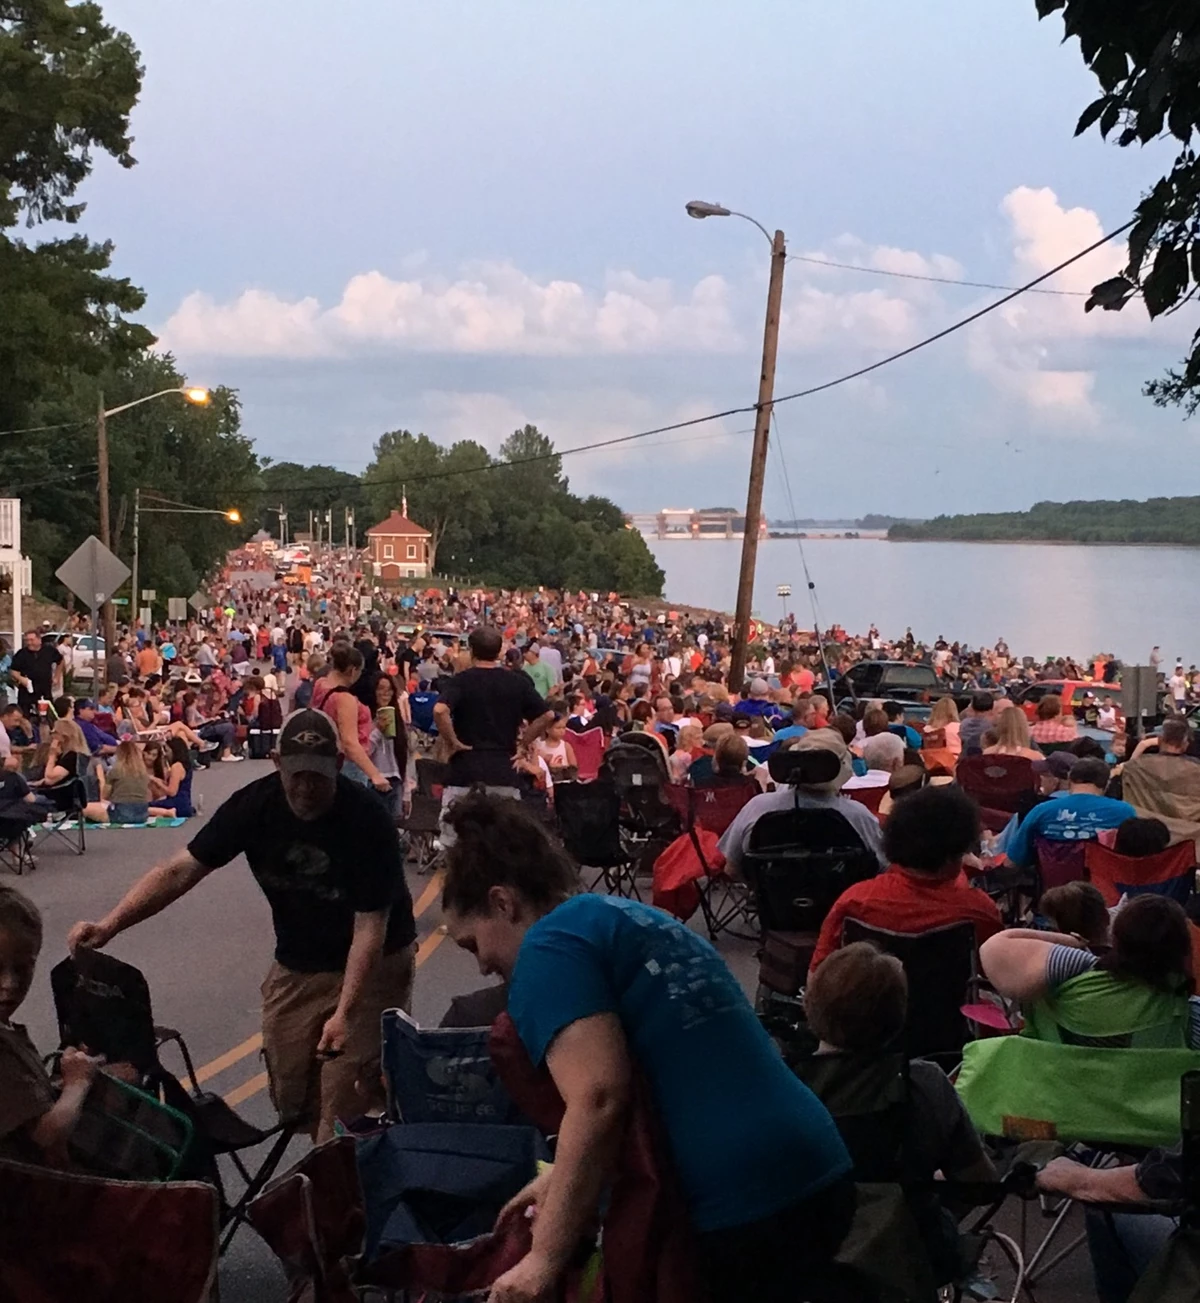 Over 10K Enjoyed Newburgh's Fireworks Celebration [Slideshow]